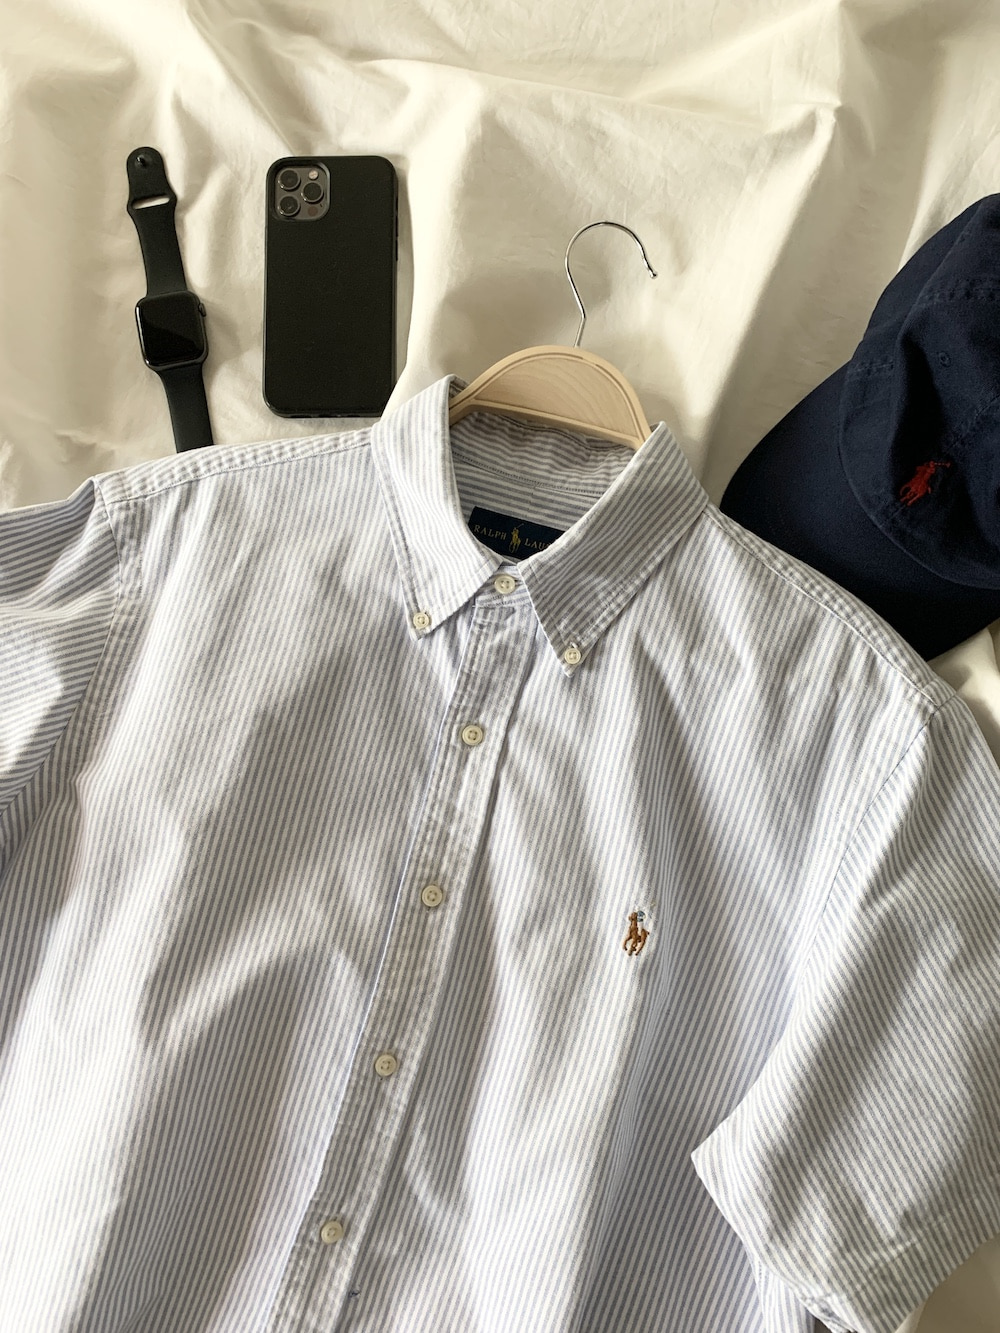 [ L ] Polo Ralph Lauren 1/2 Shirt (5268)